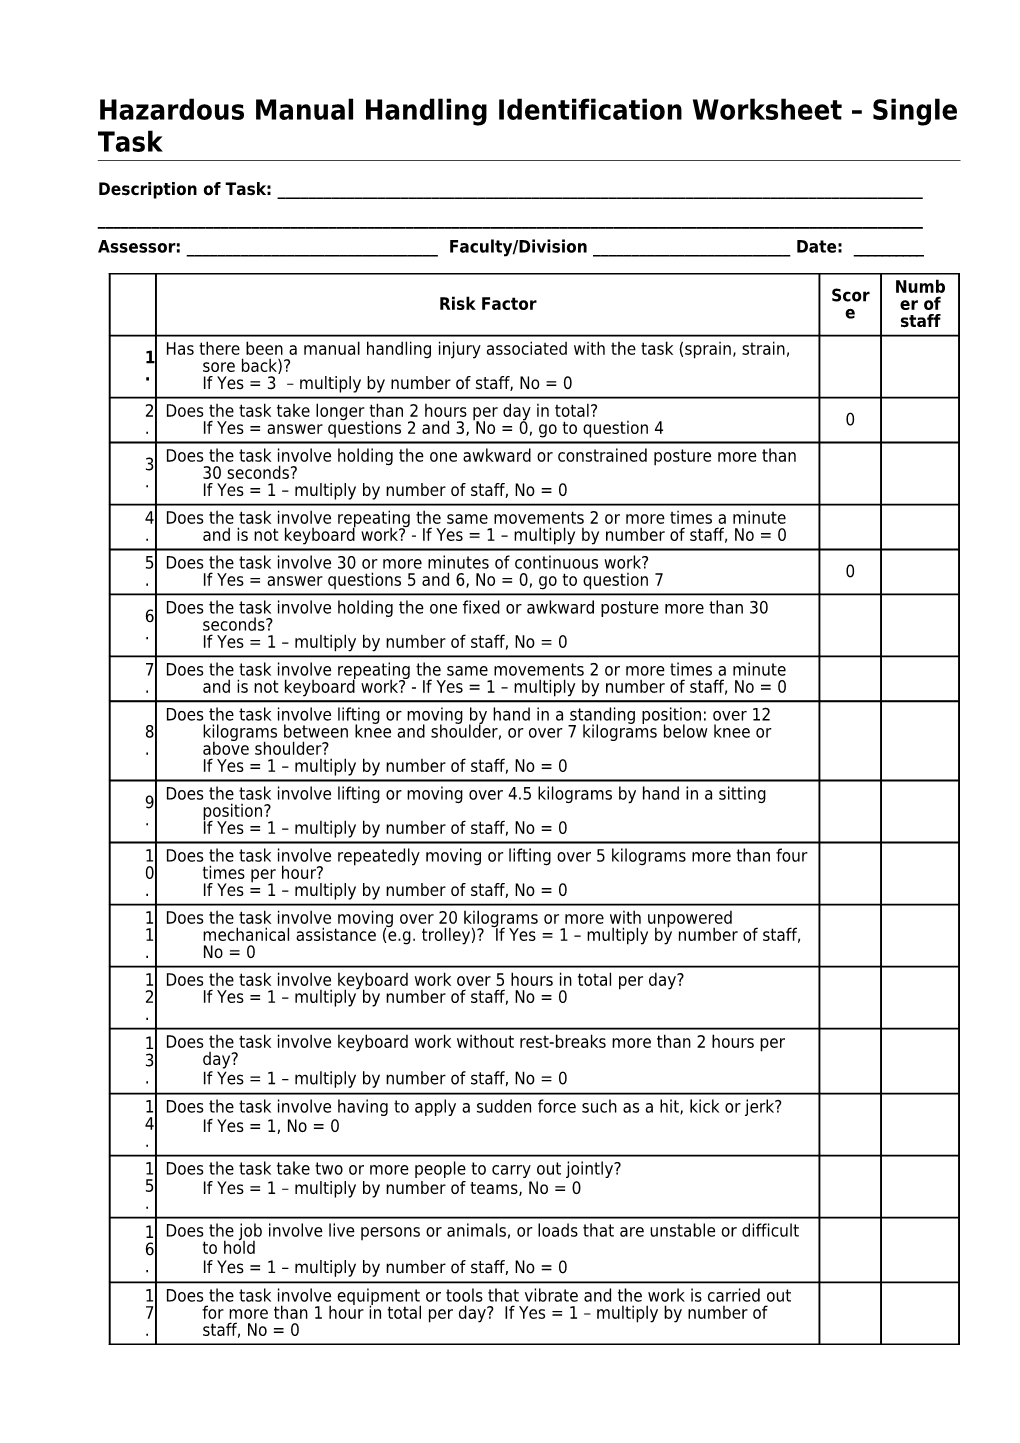 Hazardous Manual Handling Identification Worksheet Single Task